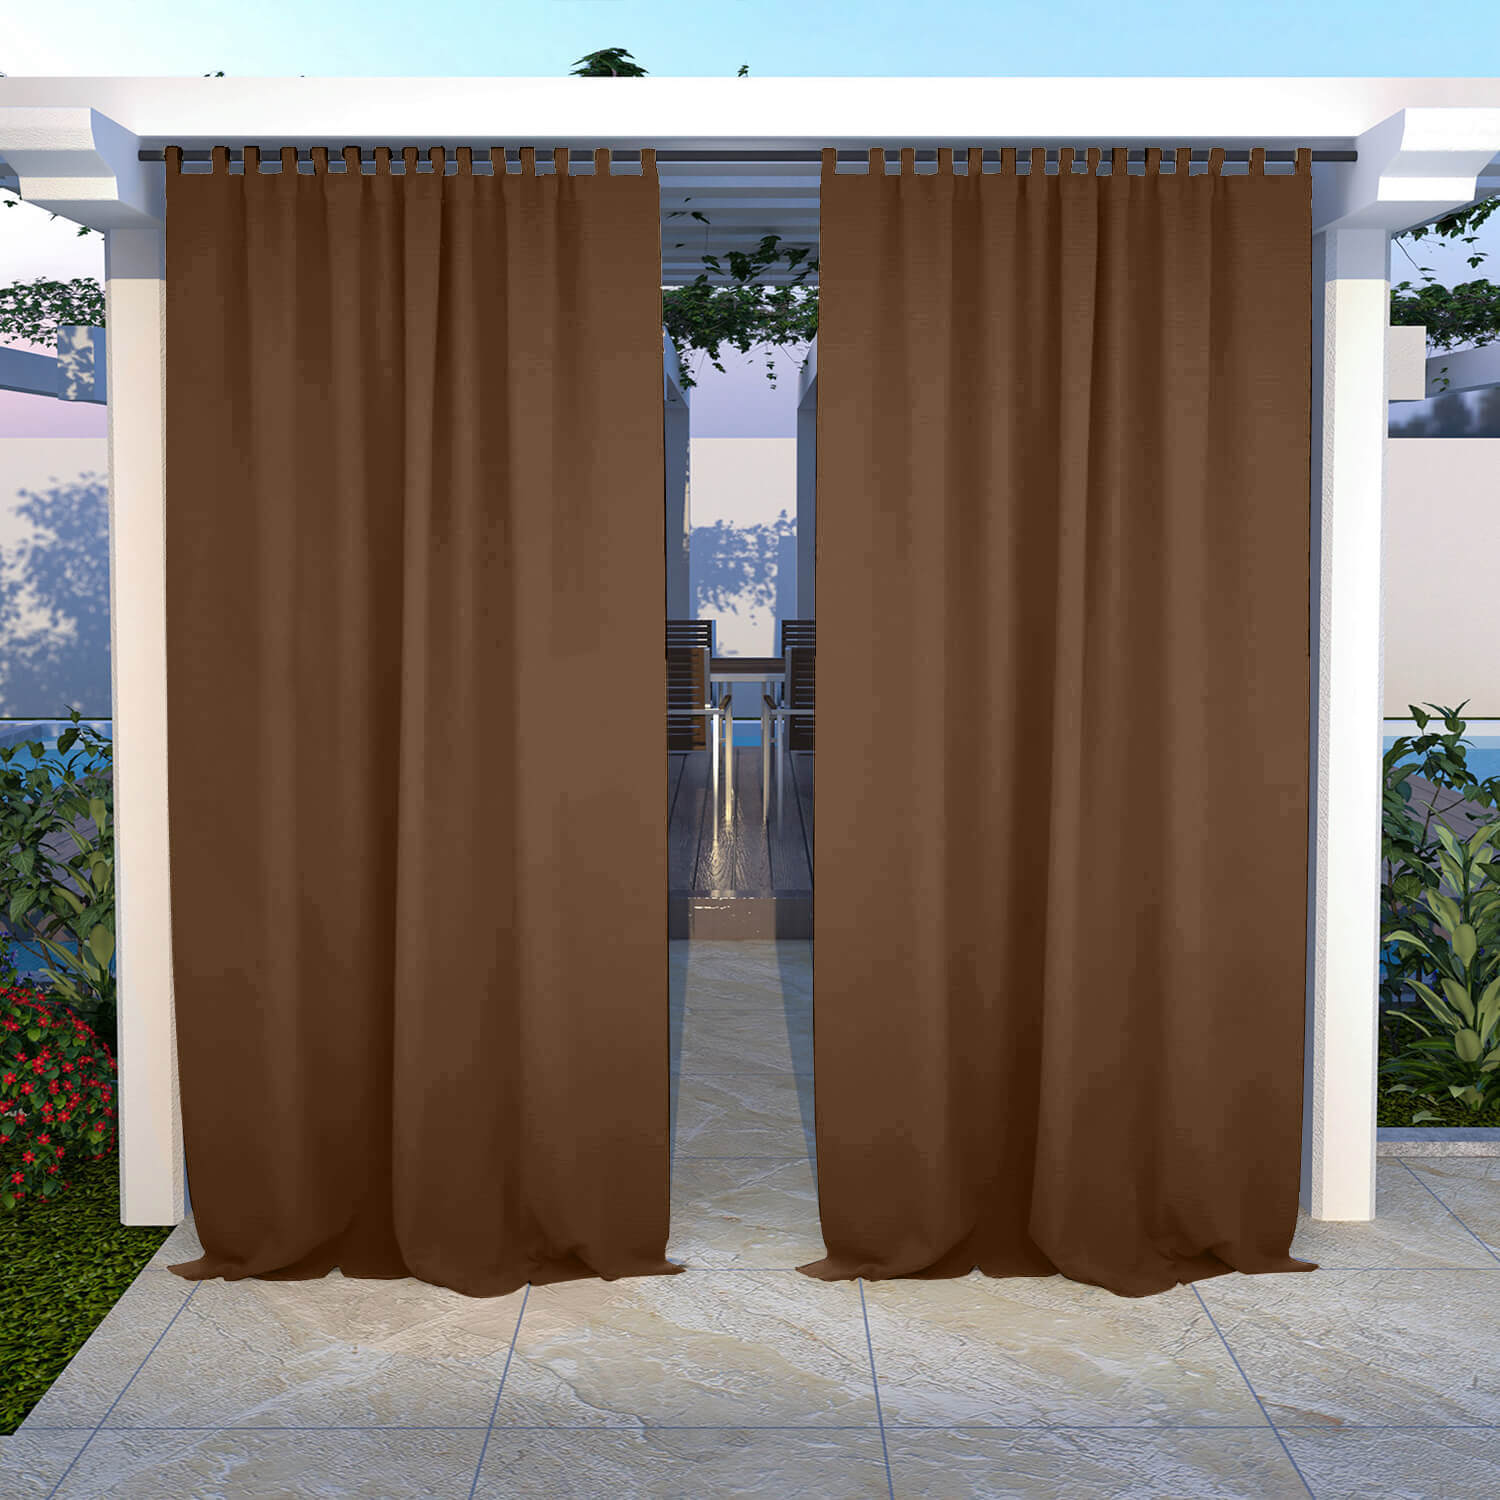 Outdoor Curtains Waterproof Tab Top 1 Panel - Coffee